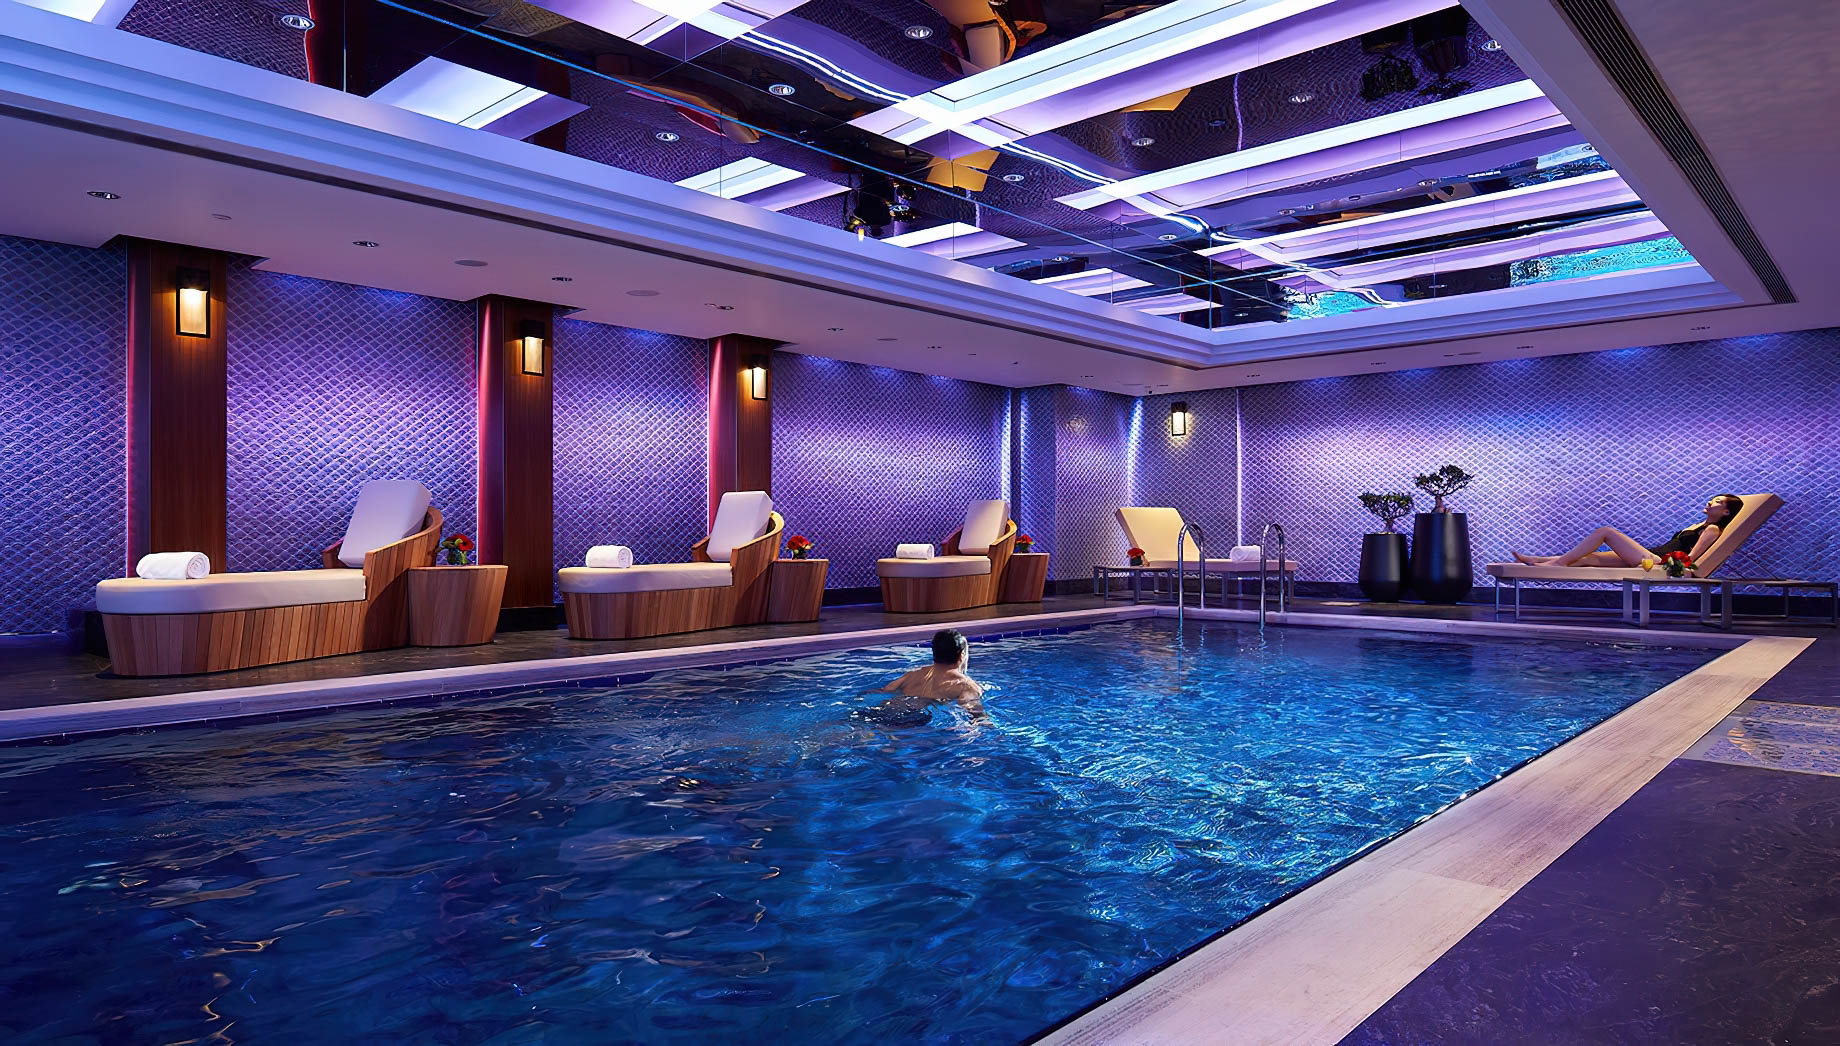 Mandarin Oriental, Hong Kong Hotel – Hong Kong, China – Simming Pool